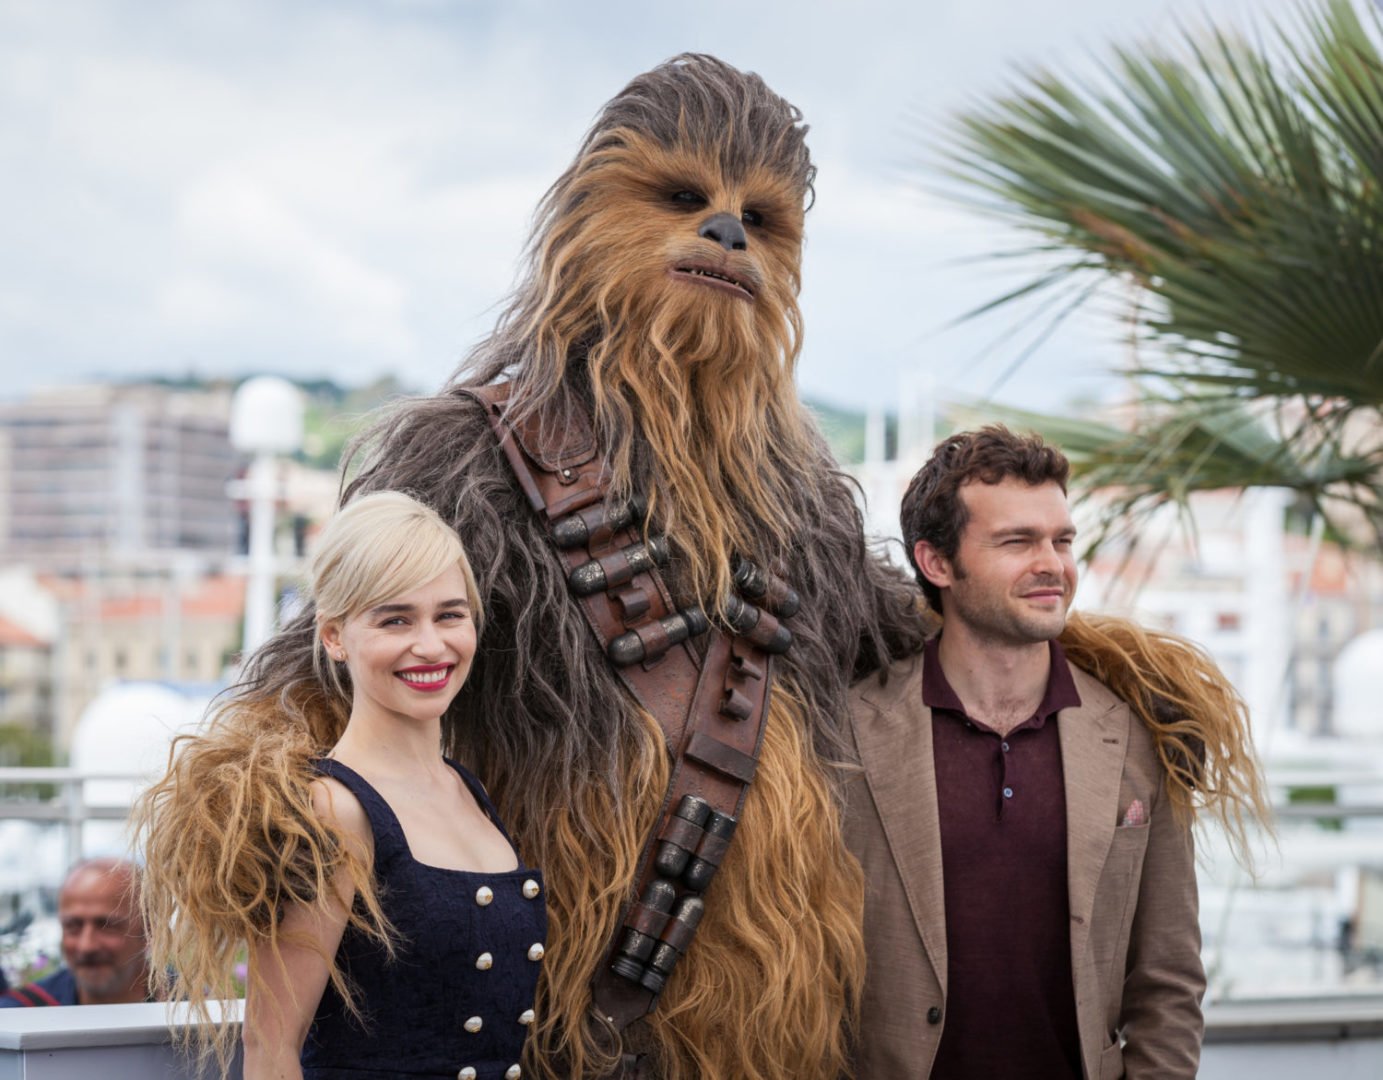 emilia clarke posing with Chewbacca